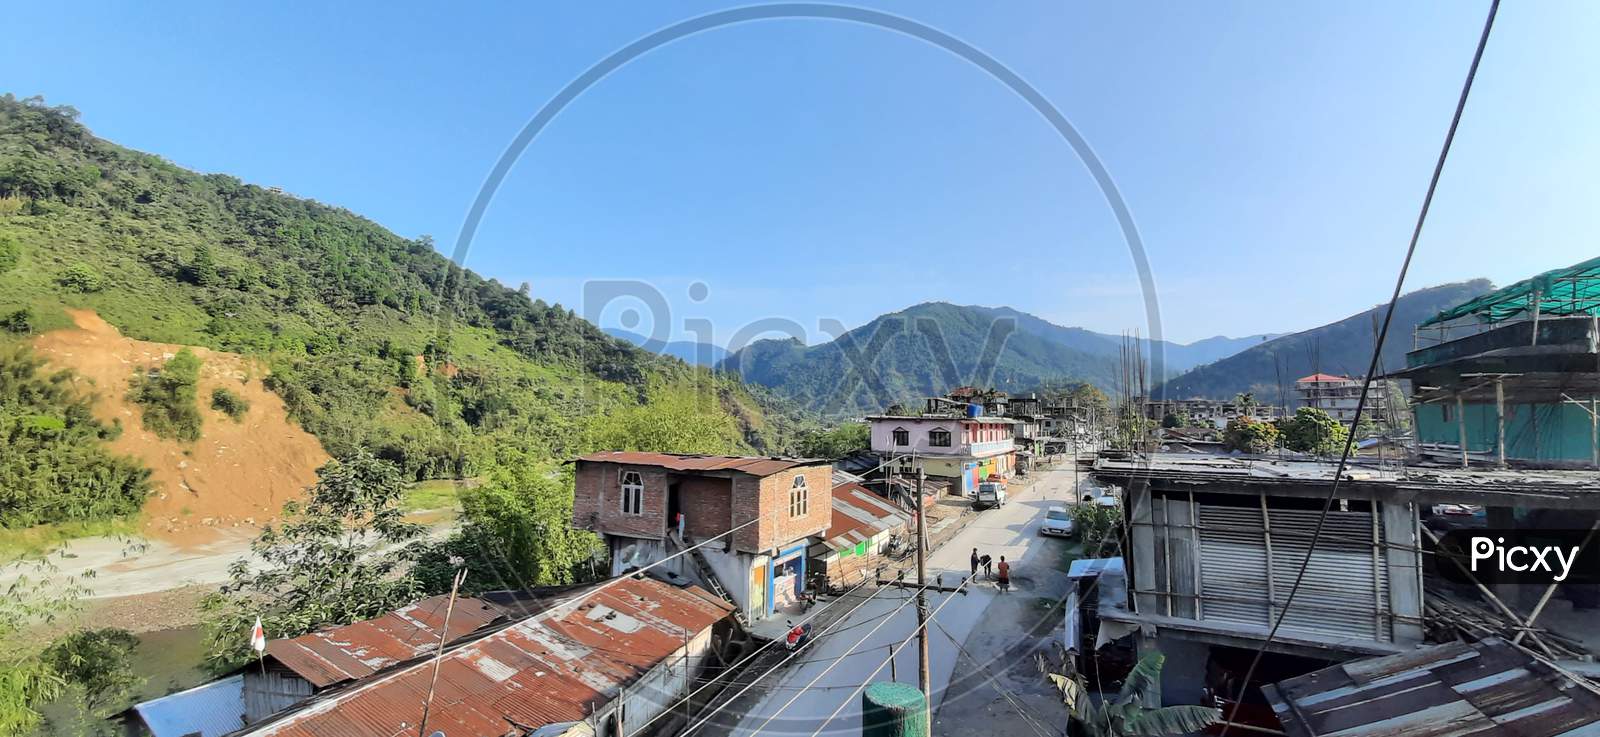 Landscape View at Seppa, Arunachal Pradesh